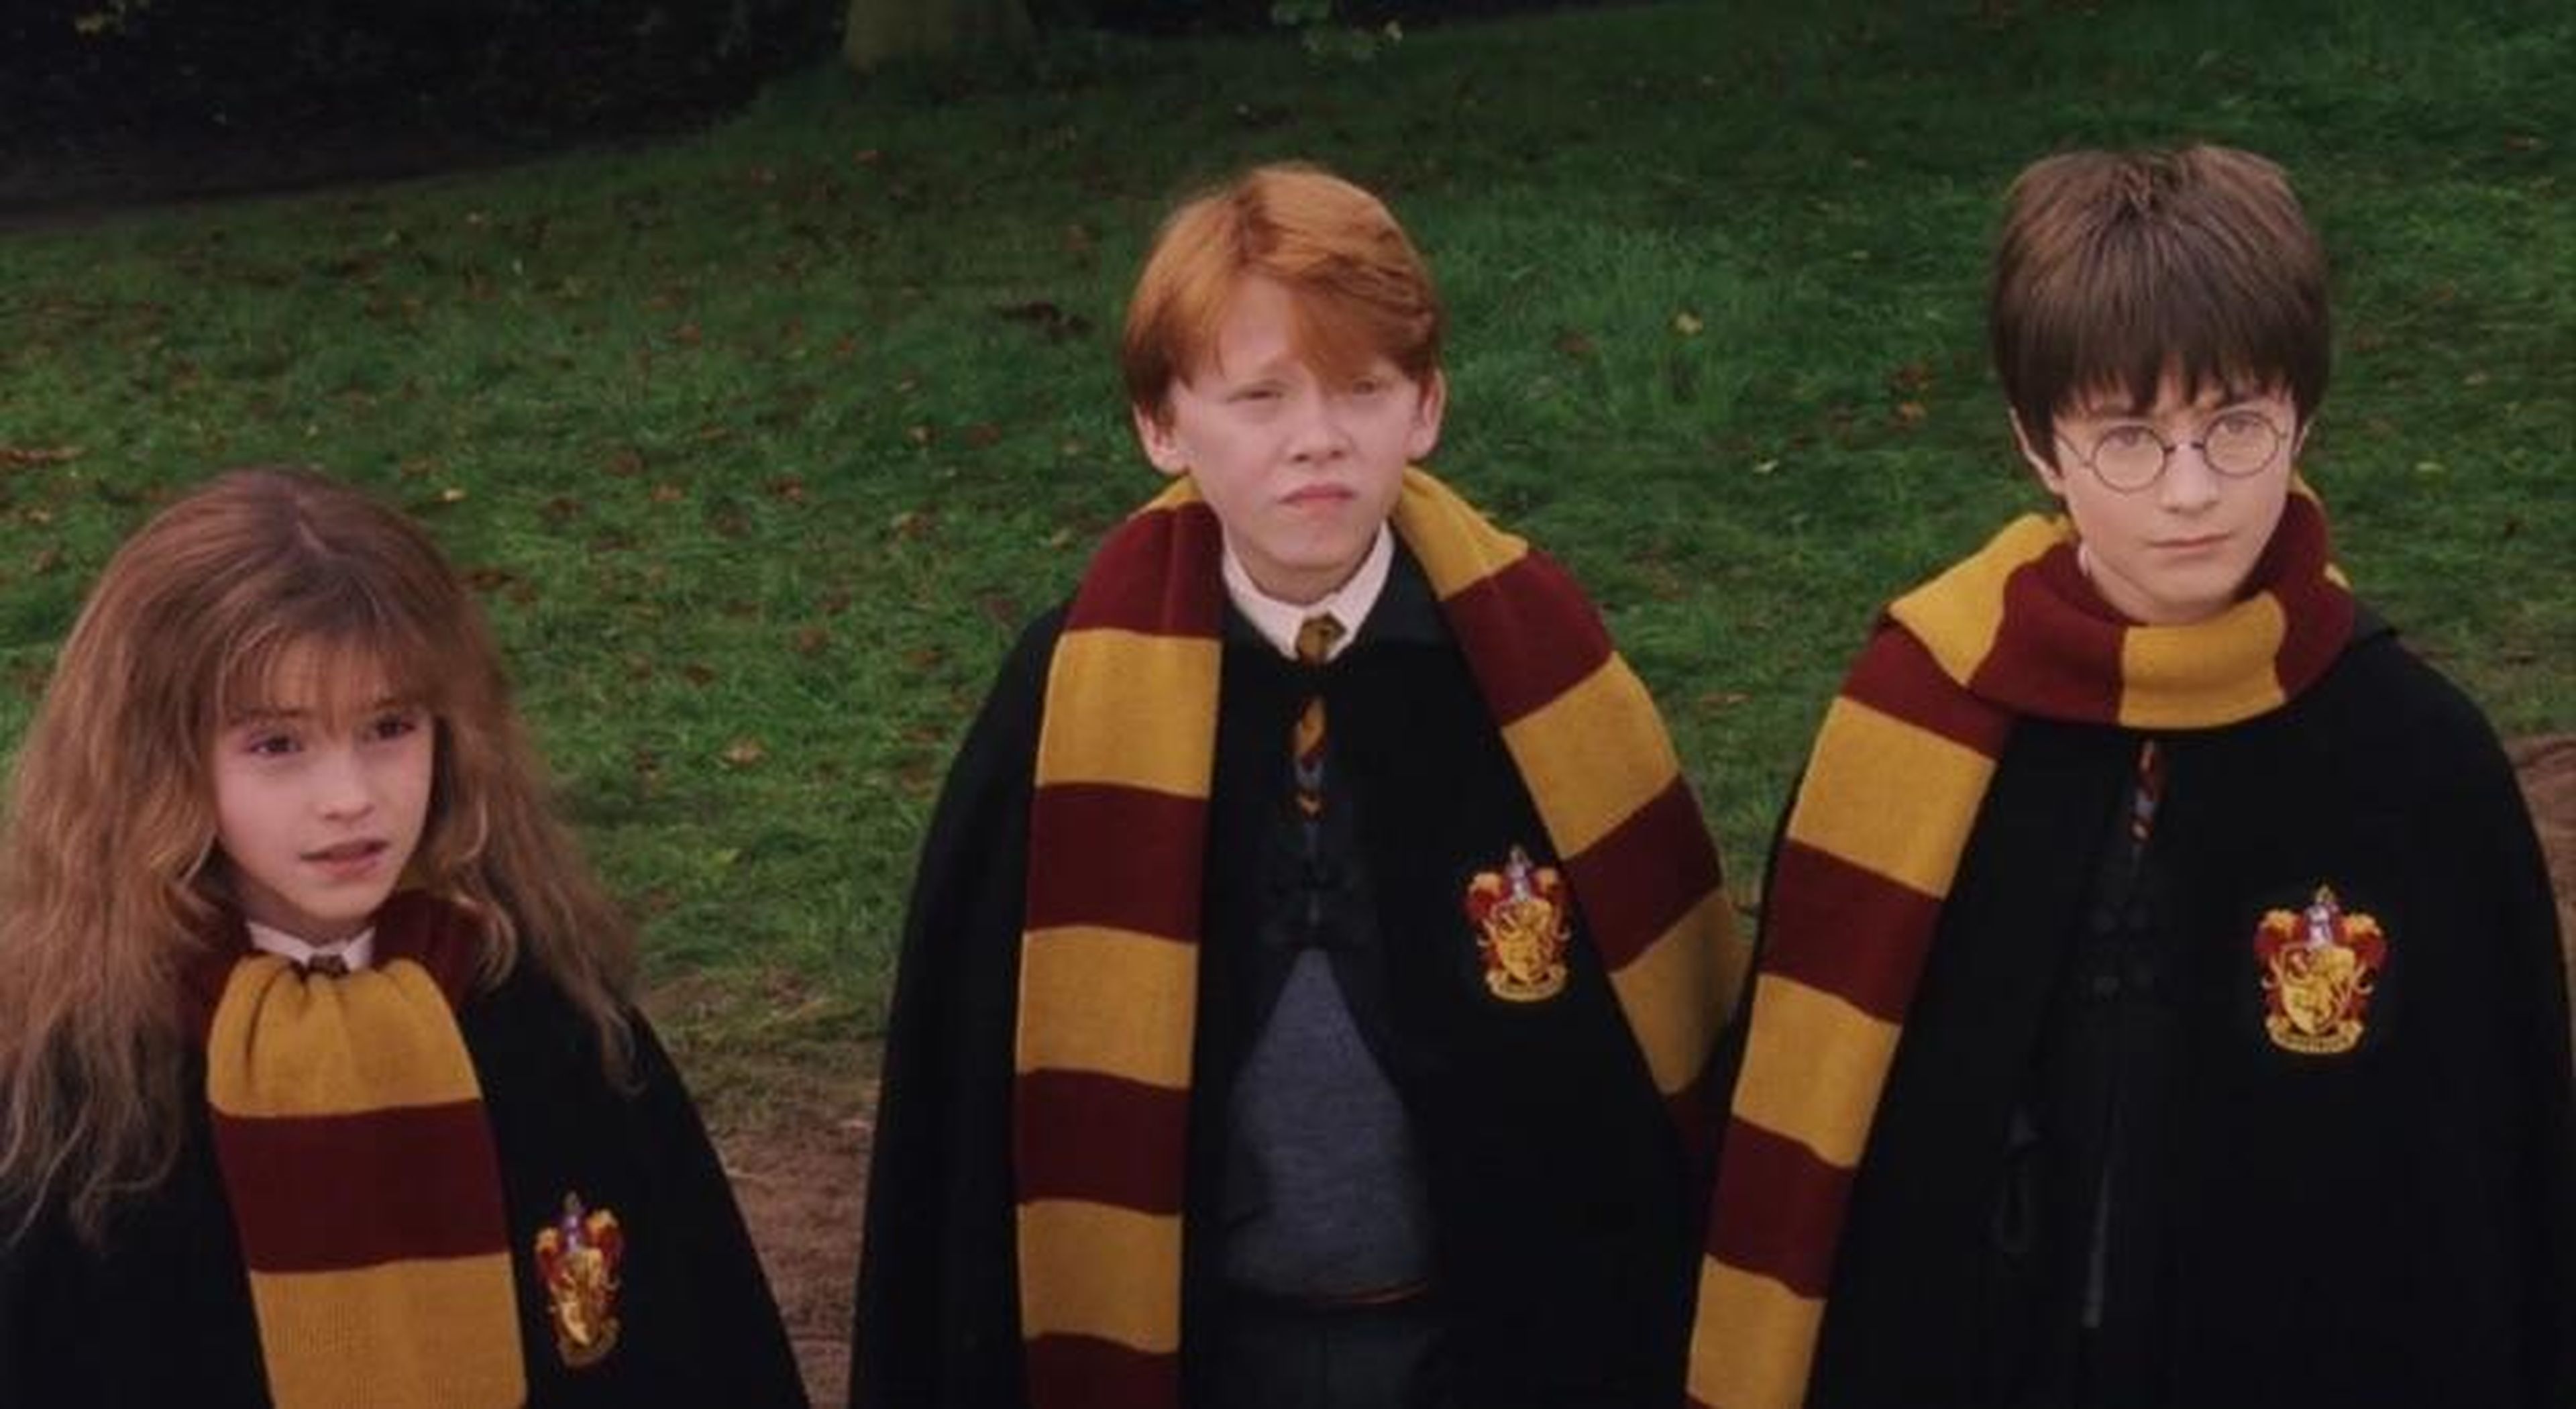 Harry Potter - Gryffindor